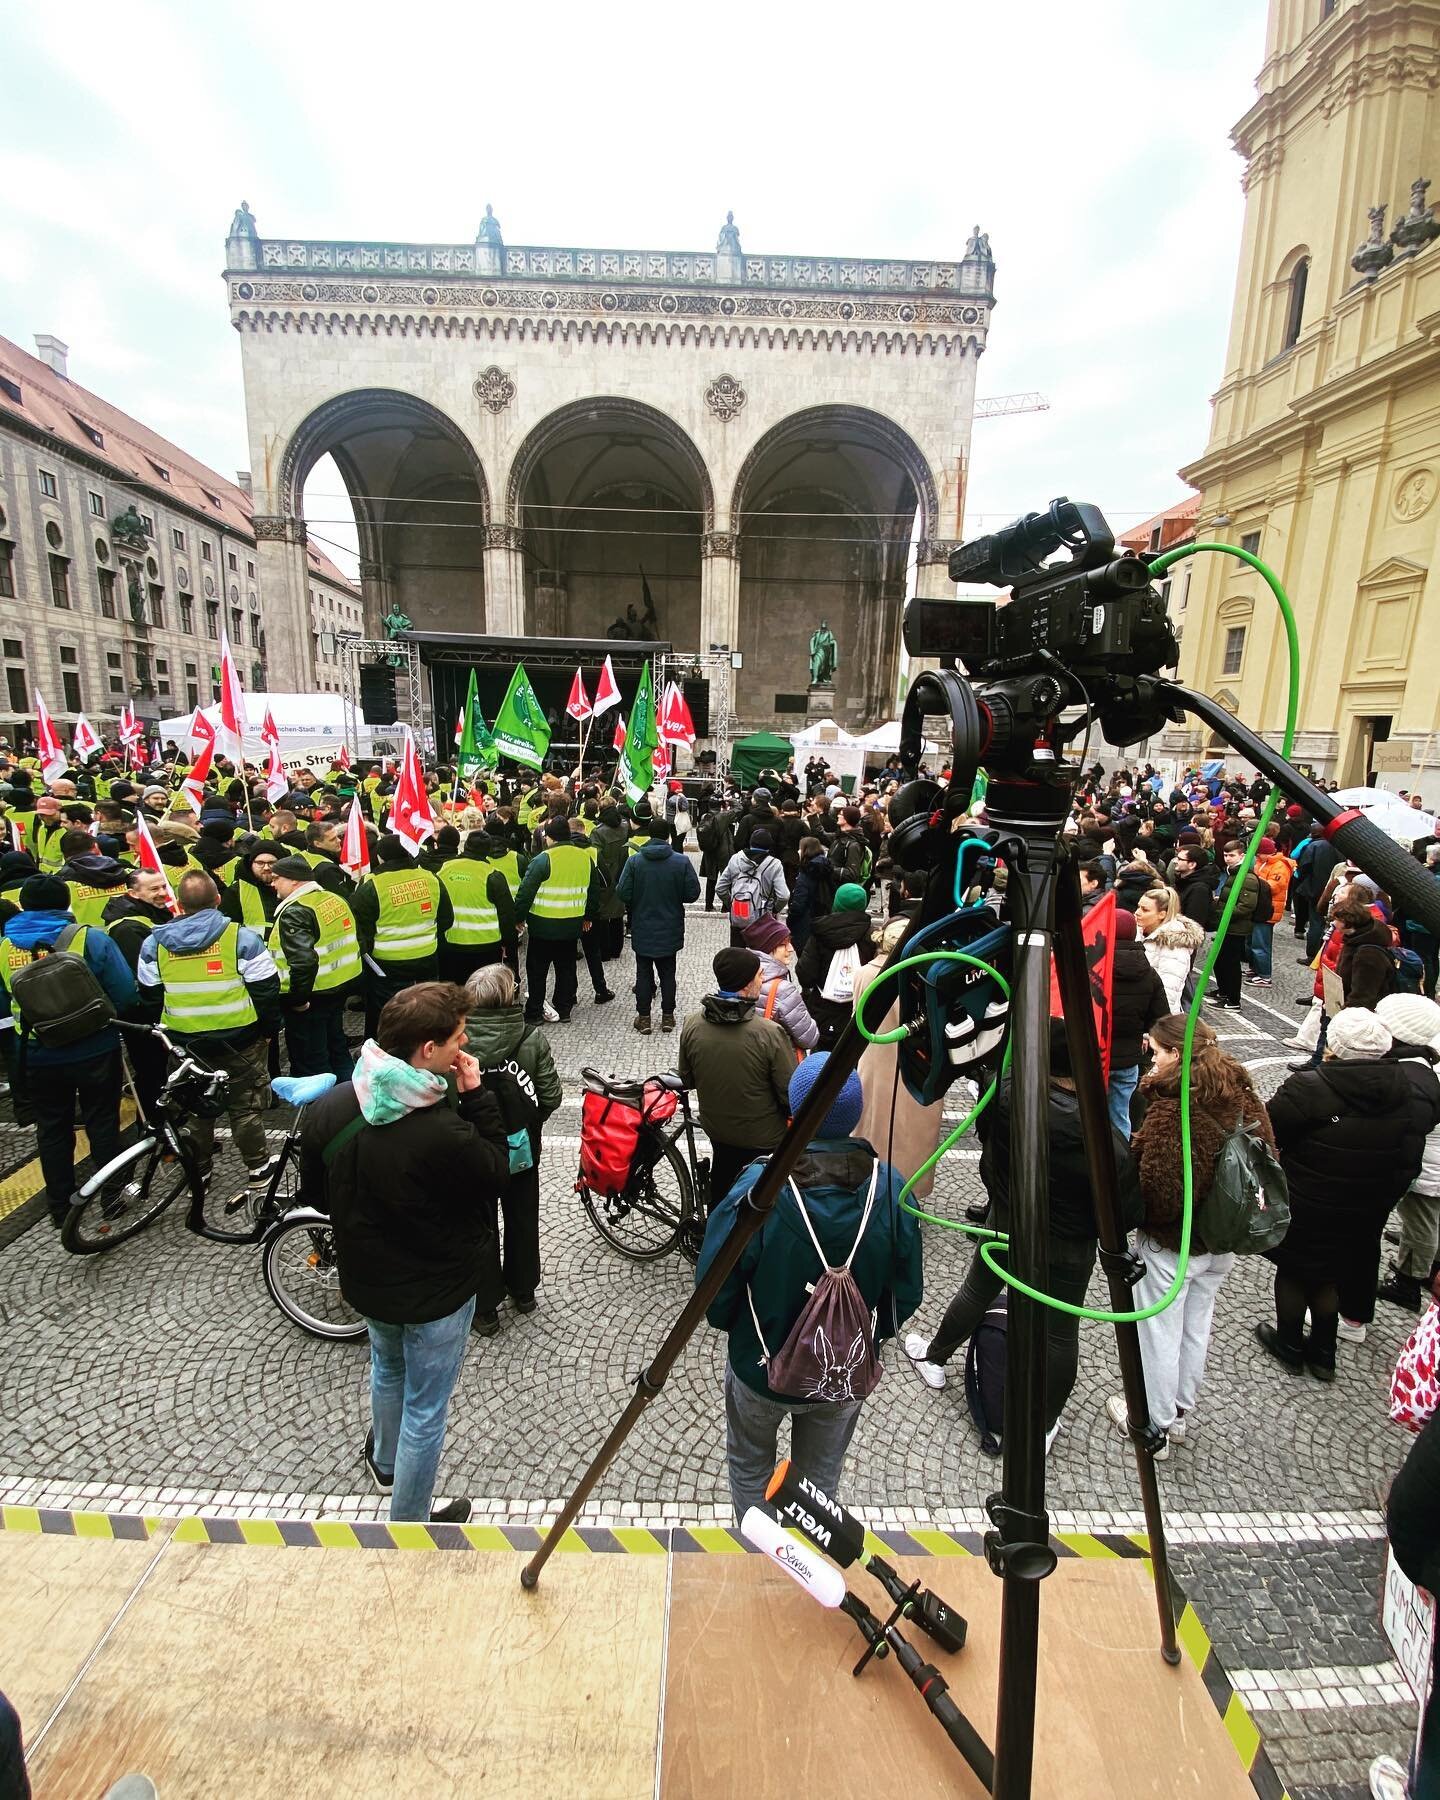 Streik &amp; Klimaprotest in M&uuml;nchen heute #live f&uuml;r @welt.nachrichtensender // @servustv.deutschland 
#bayern #streik #verdi #fffmunich #live #klimaprotest #fridaysforfuture #fridaysforfuturemunich #liveu #onair #work #kameramann #reporter